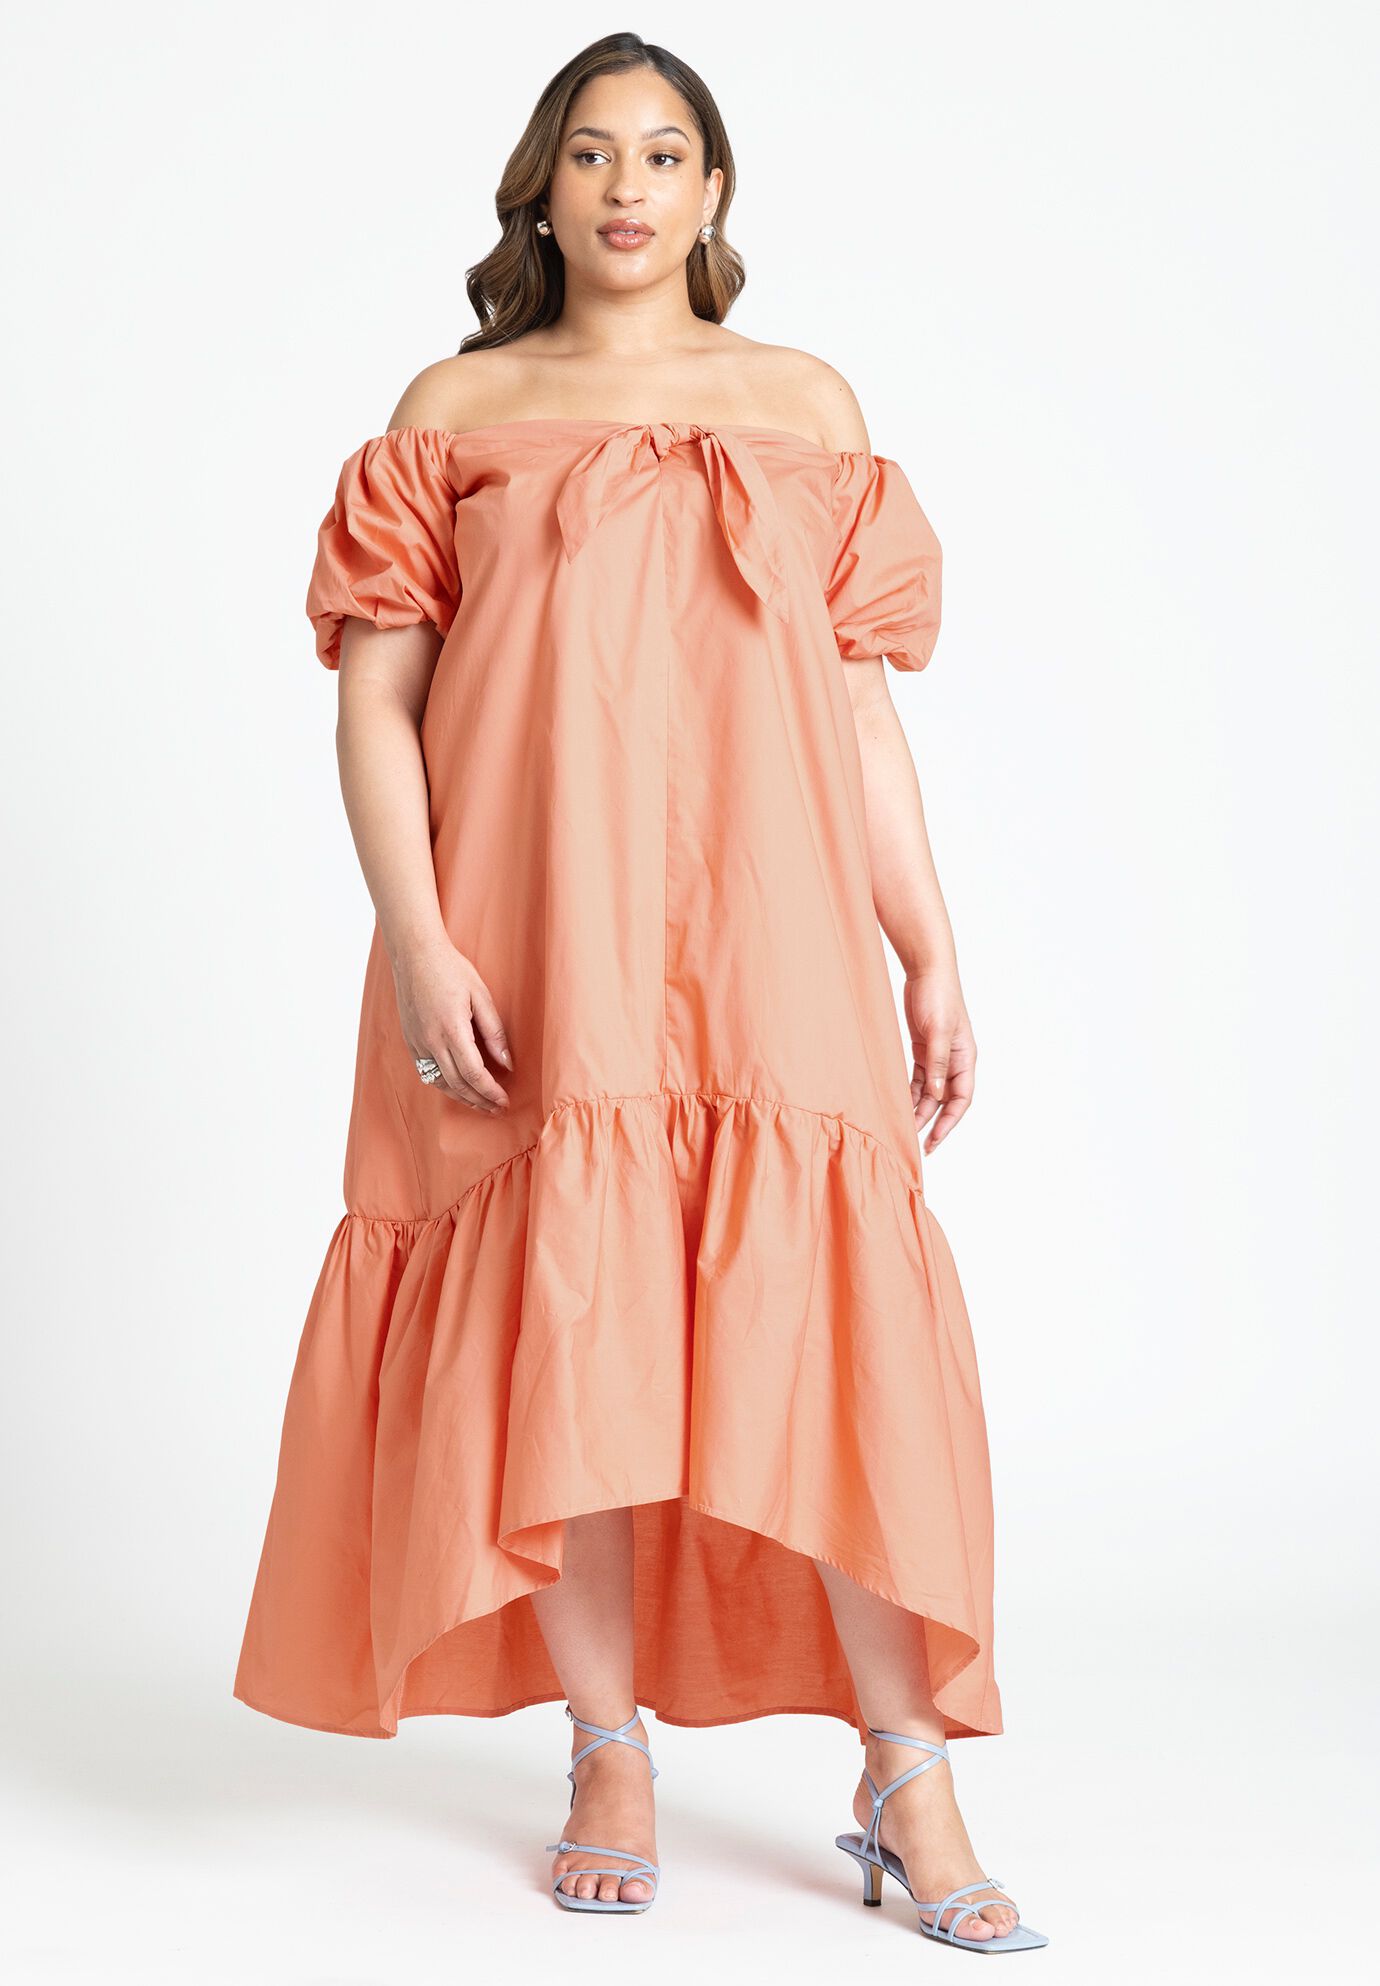 Dress by Eloquii